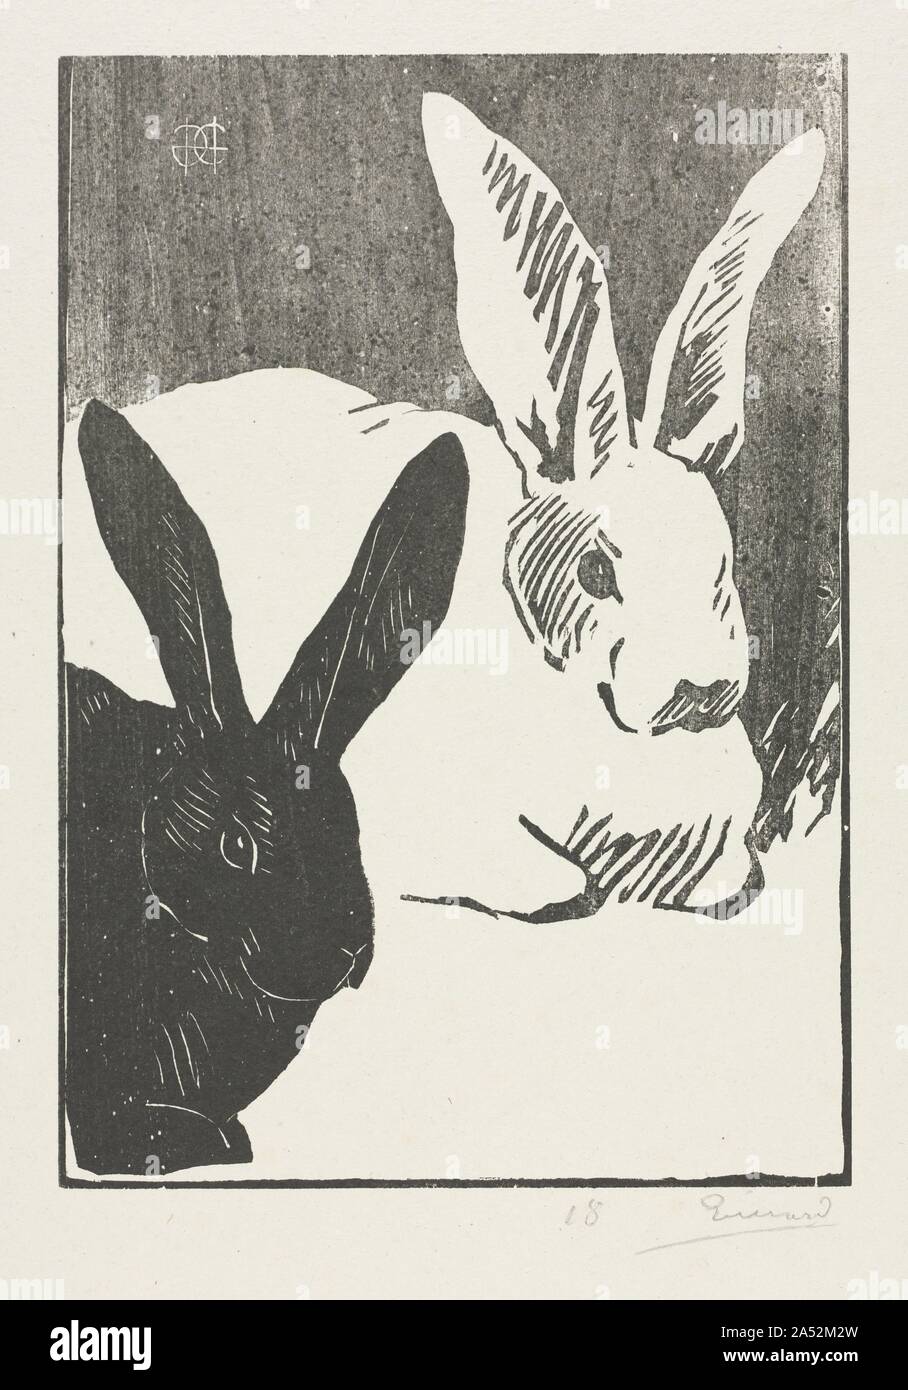 Les Lapins, 1893. Depuis Gu&# xe9;rard a été décrit comme le "japonais de Paris" (japonais de Paris), il est approprié que la source stylistique pour les lapins serait l'artiste japonais Katsushika Hokusai (1760-1849), qui fait de nombreuses gravures sur bois représentant des animaux. Banque D'Images